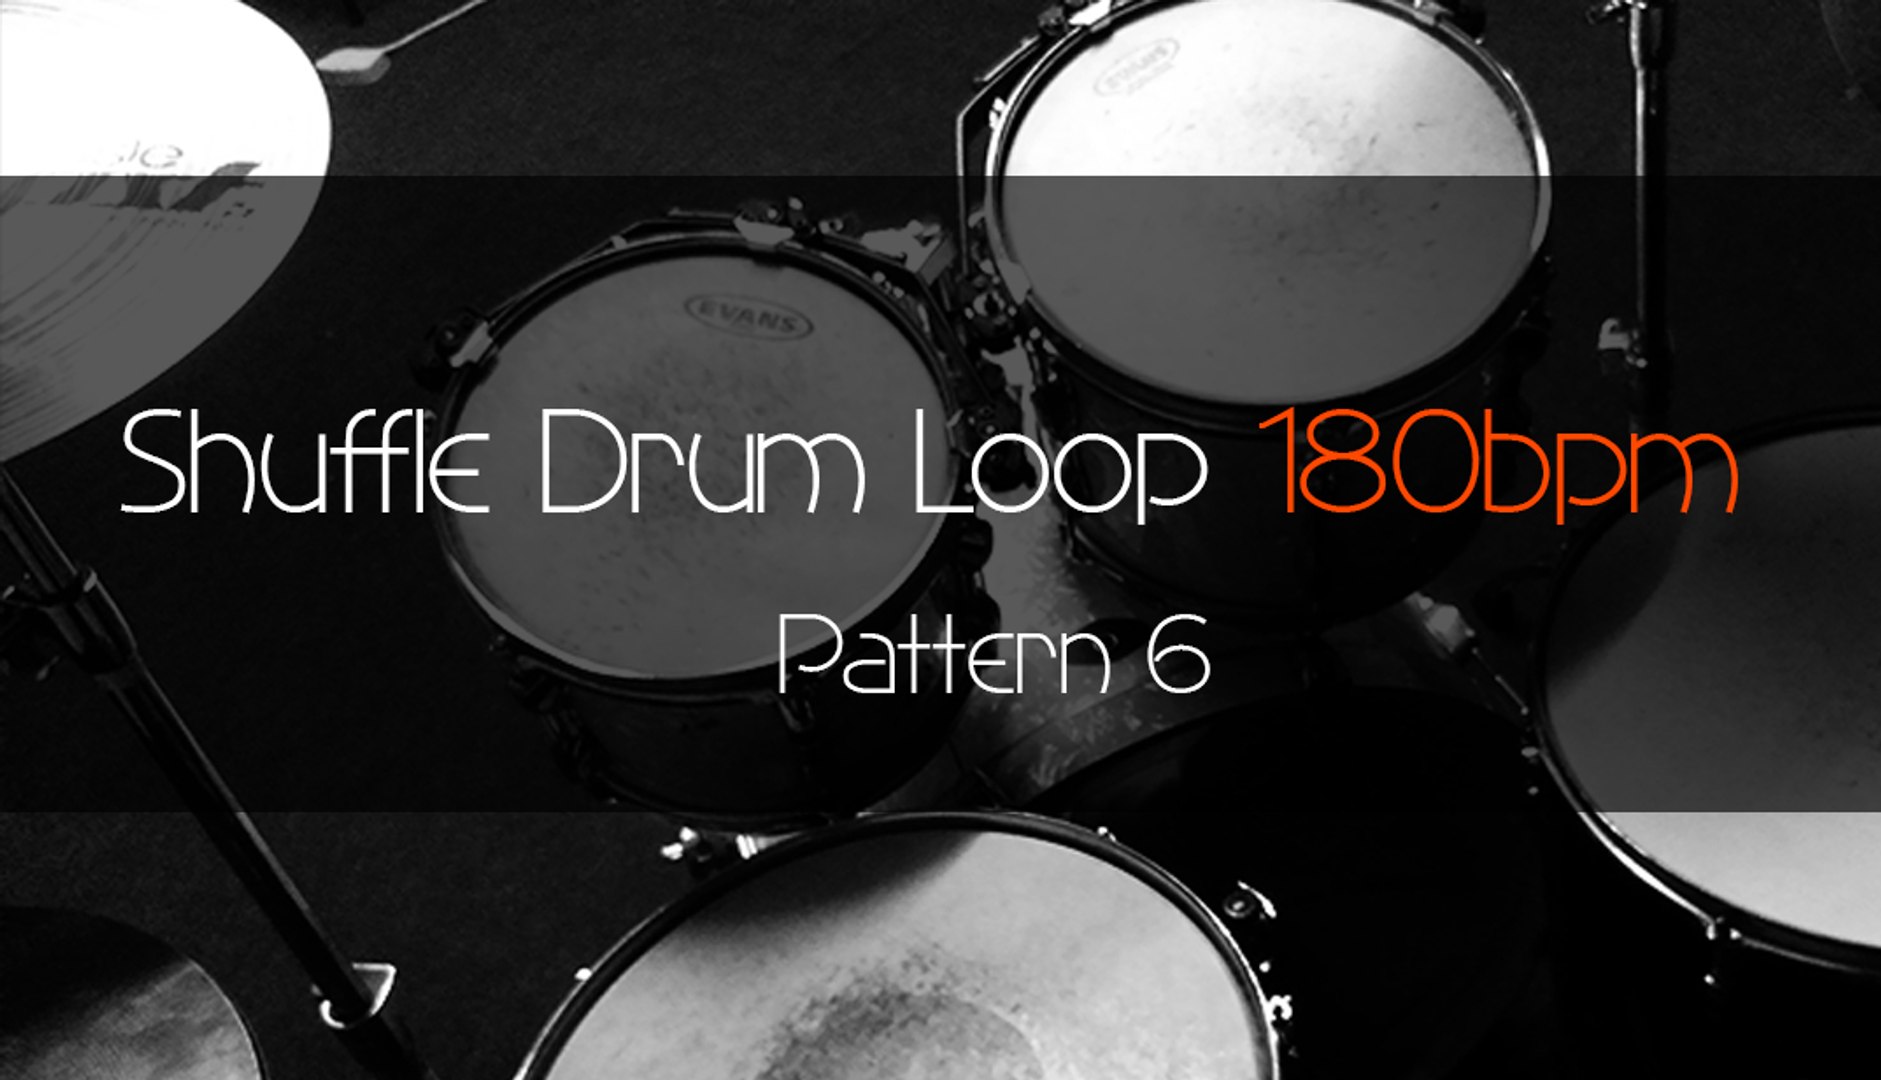 SHUFFLE Drum Loop Practice Tool 180bpm Pattern 6 - video dailymotion